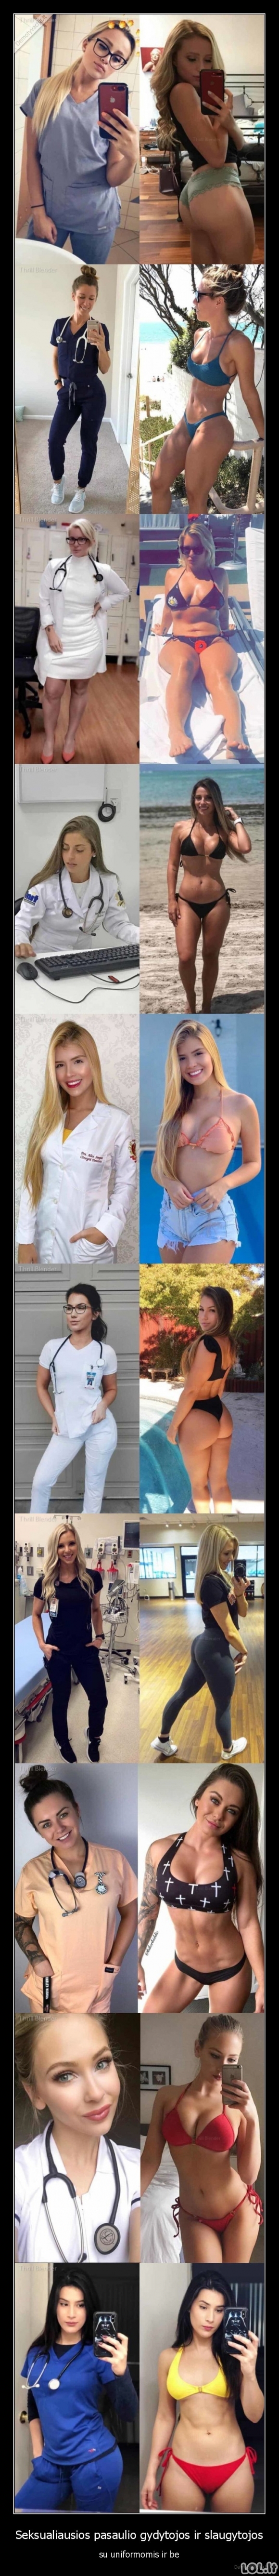 Seksualiausios pasaulio gydytojos ir slaugytojos su uniformomis ir be